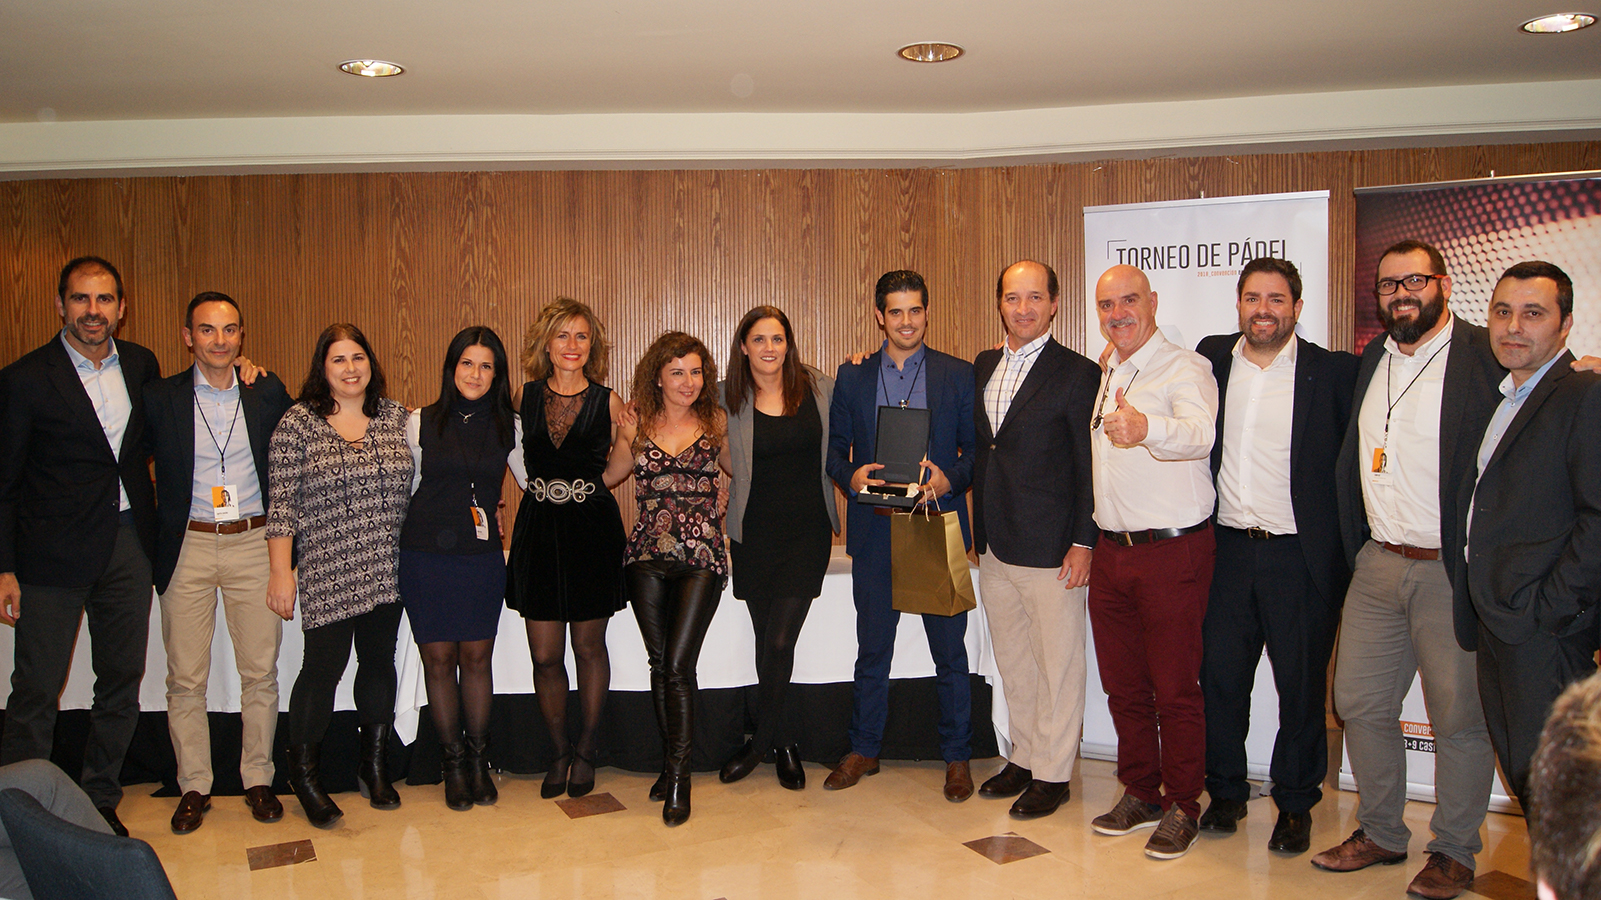 El equipo comercial de la Delegación de Barcelona Norte recogiendo el 2º Premio a Mejor Delegación durante la Convención 2018 de Conversia